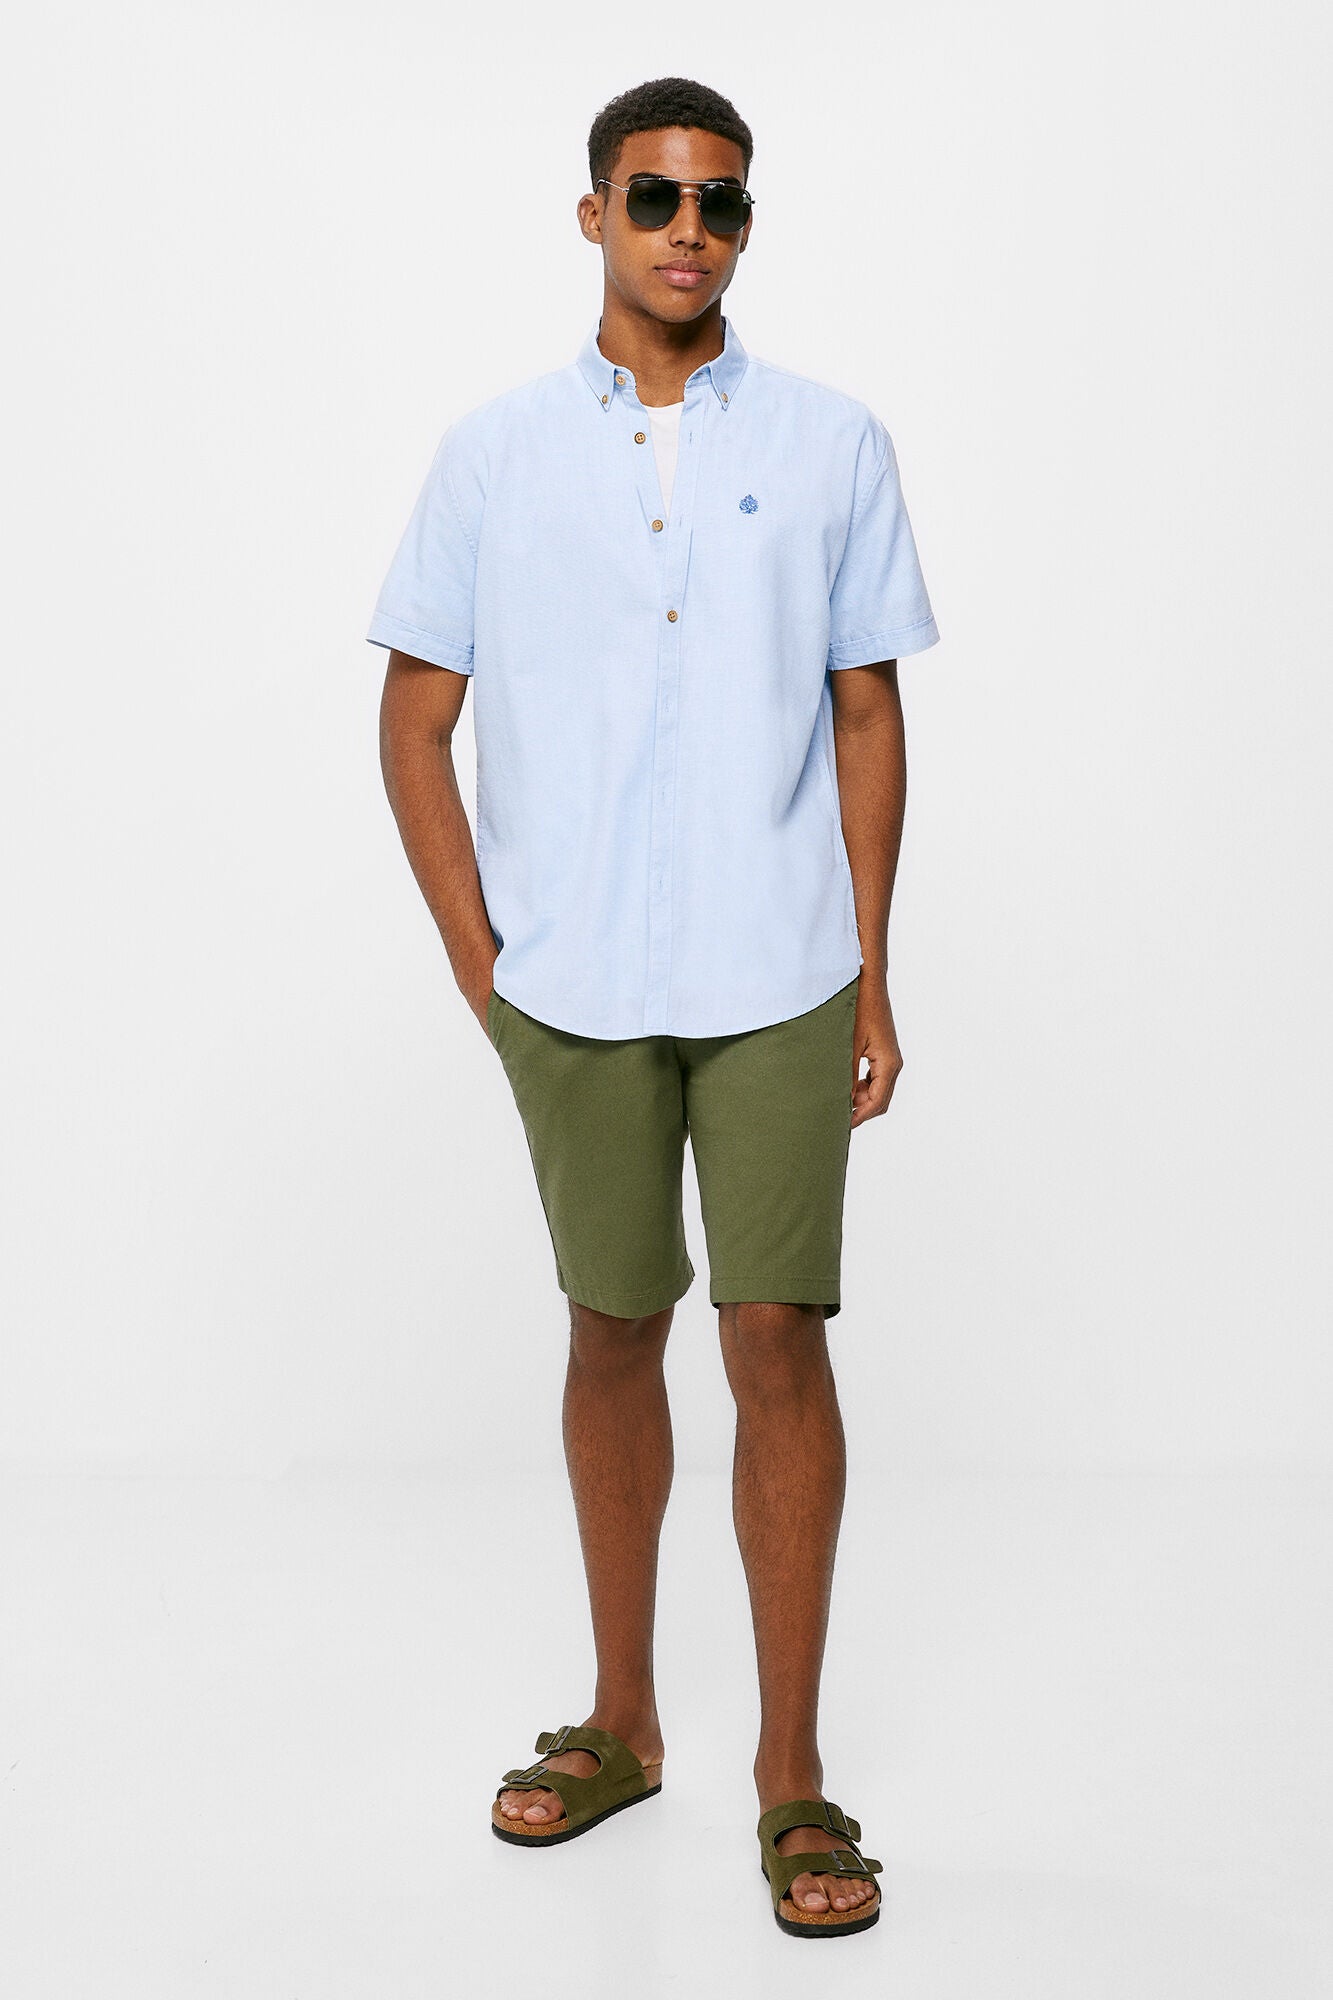 Textured colour Short Sleeve shirt (Regular Fit) - Light Blue